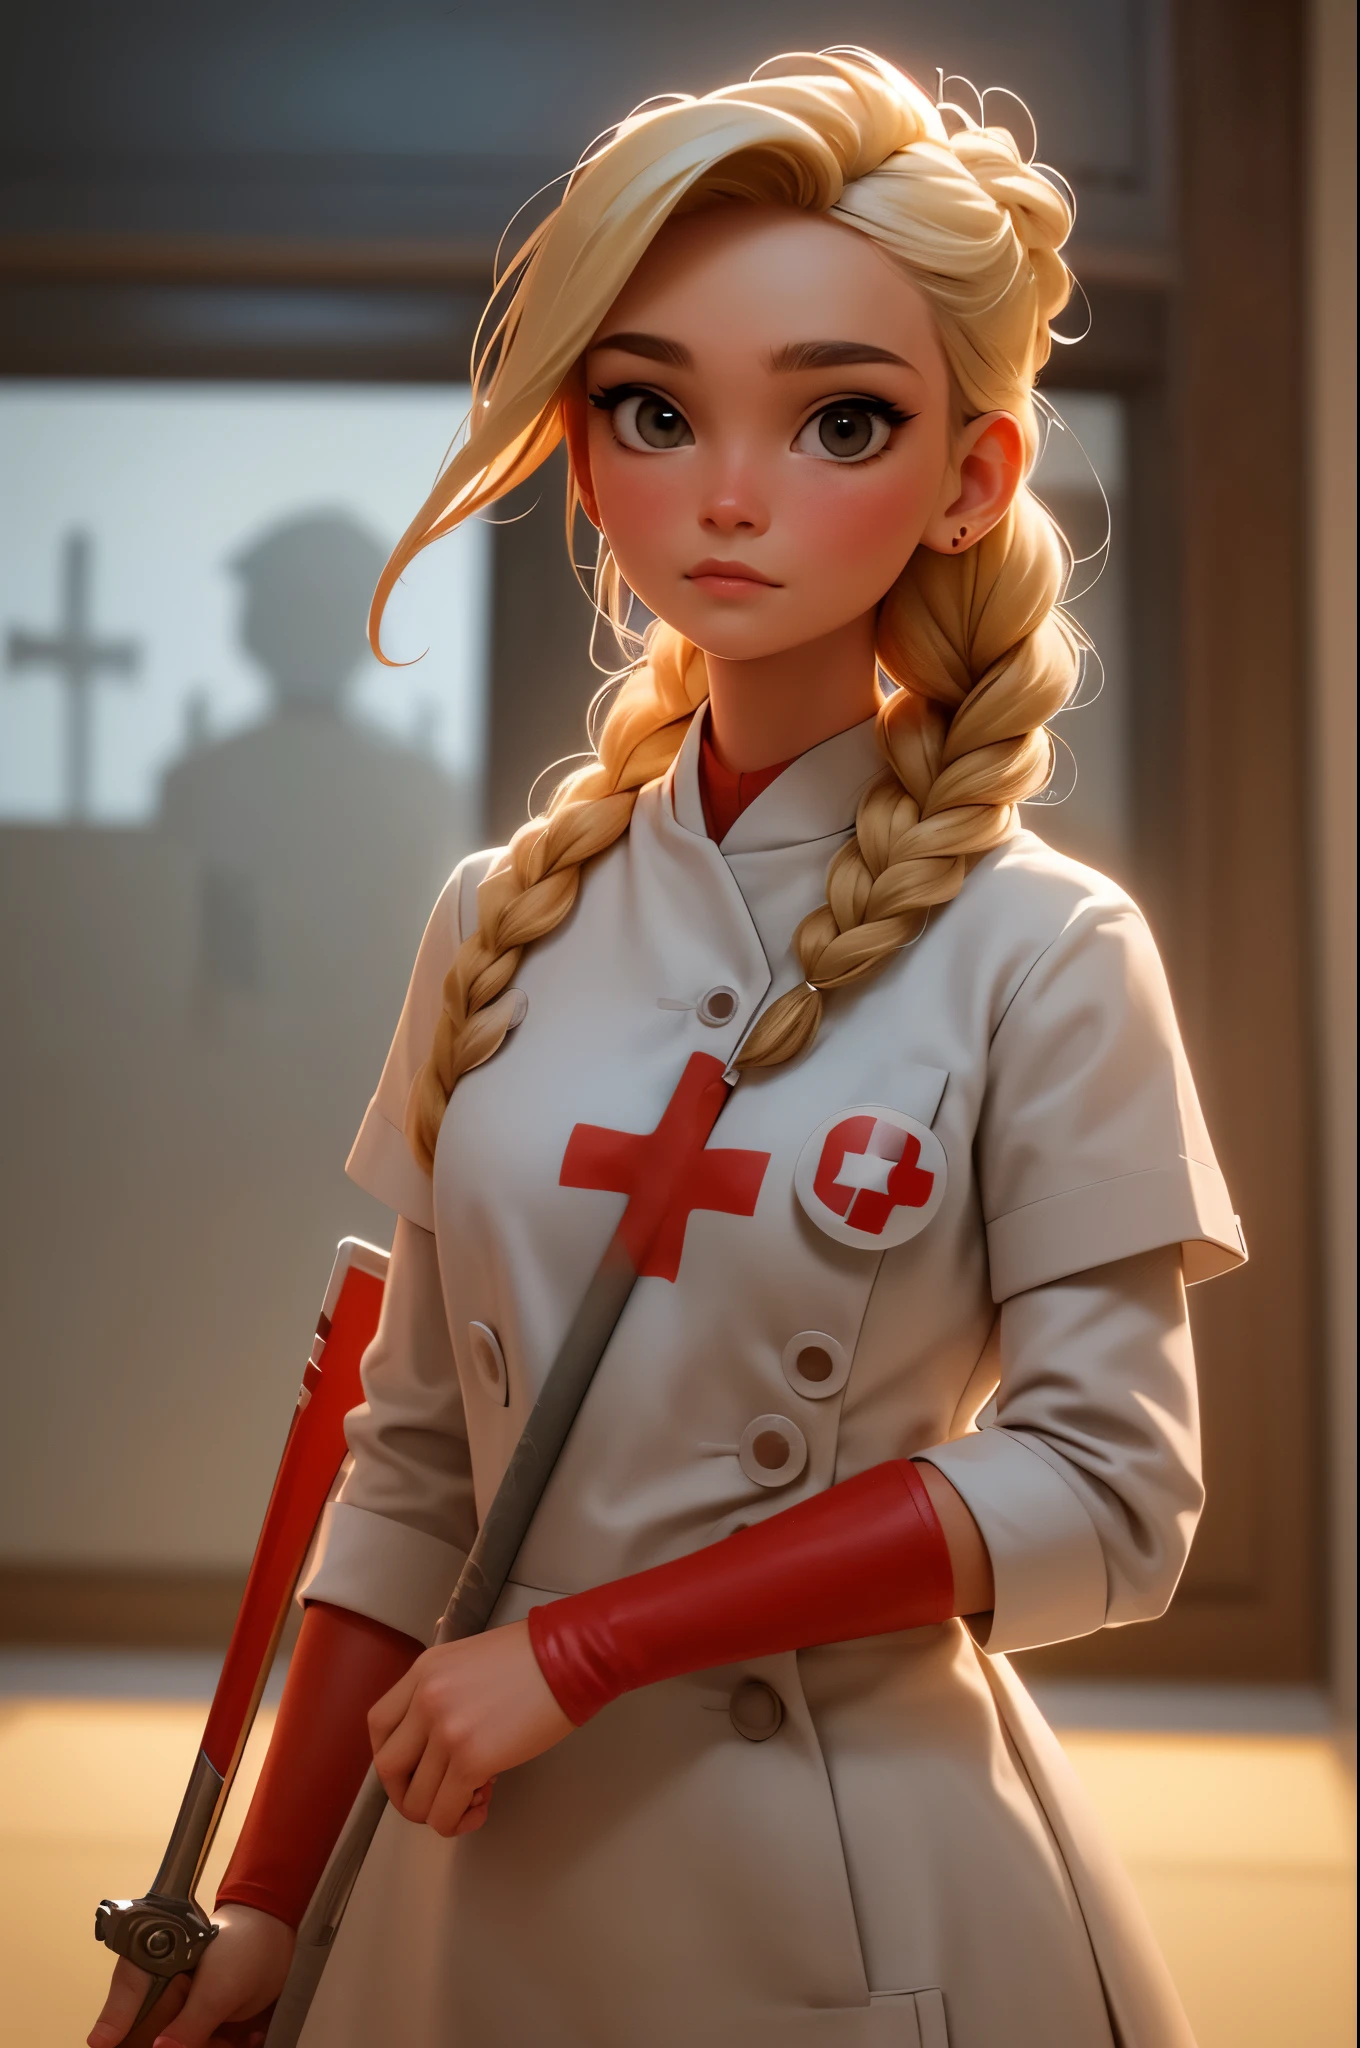 1人の女の子, ブロンドの編み髪, Warrior 看護師 with sword on the battlefield, 赤十字のシンボルが入った光沢のある白い革で覆われている, 看護師.